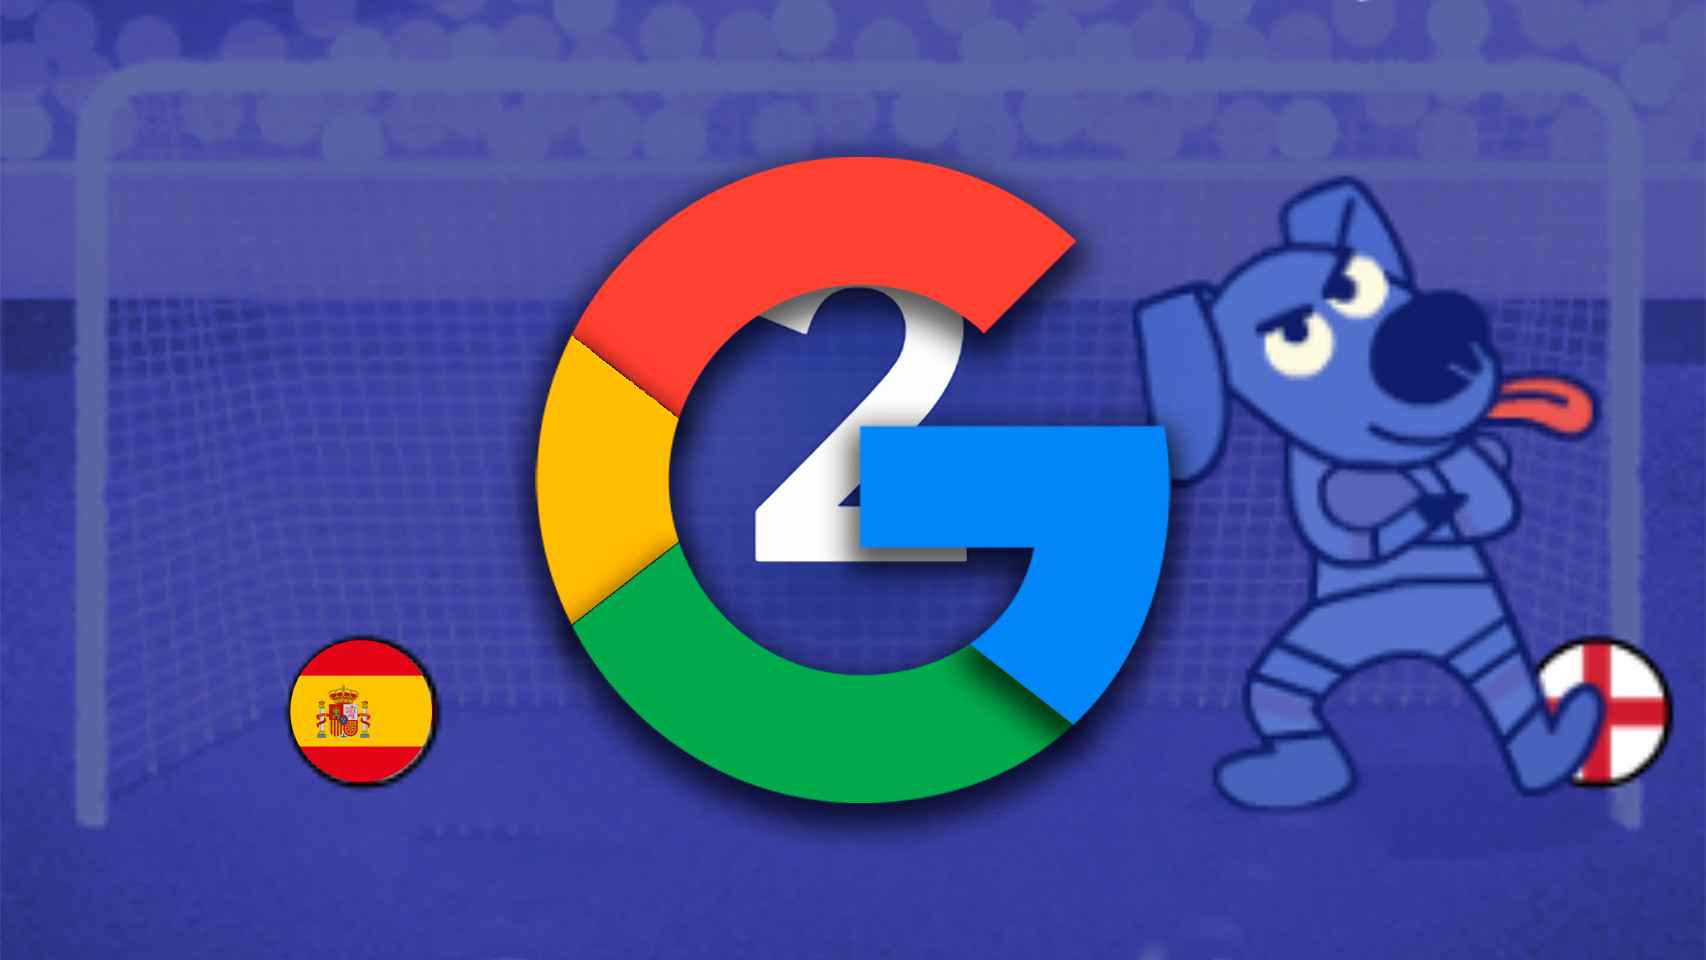 El mini juego de Google para el Mundial de Fútbol 2022 en Catar